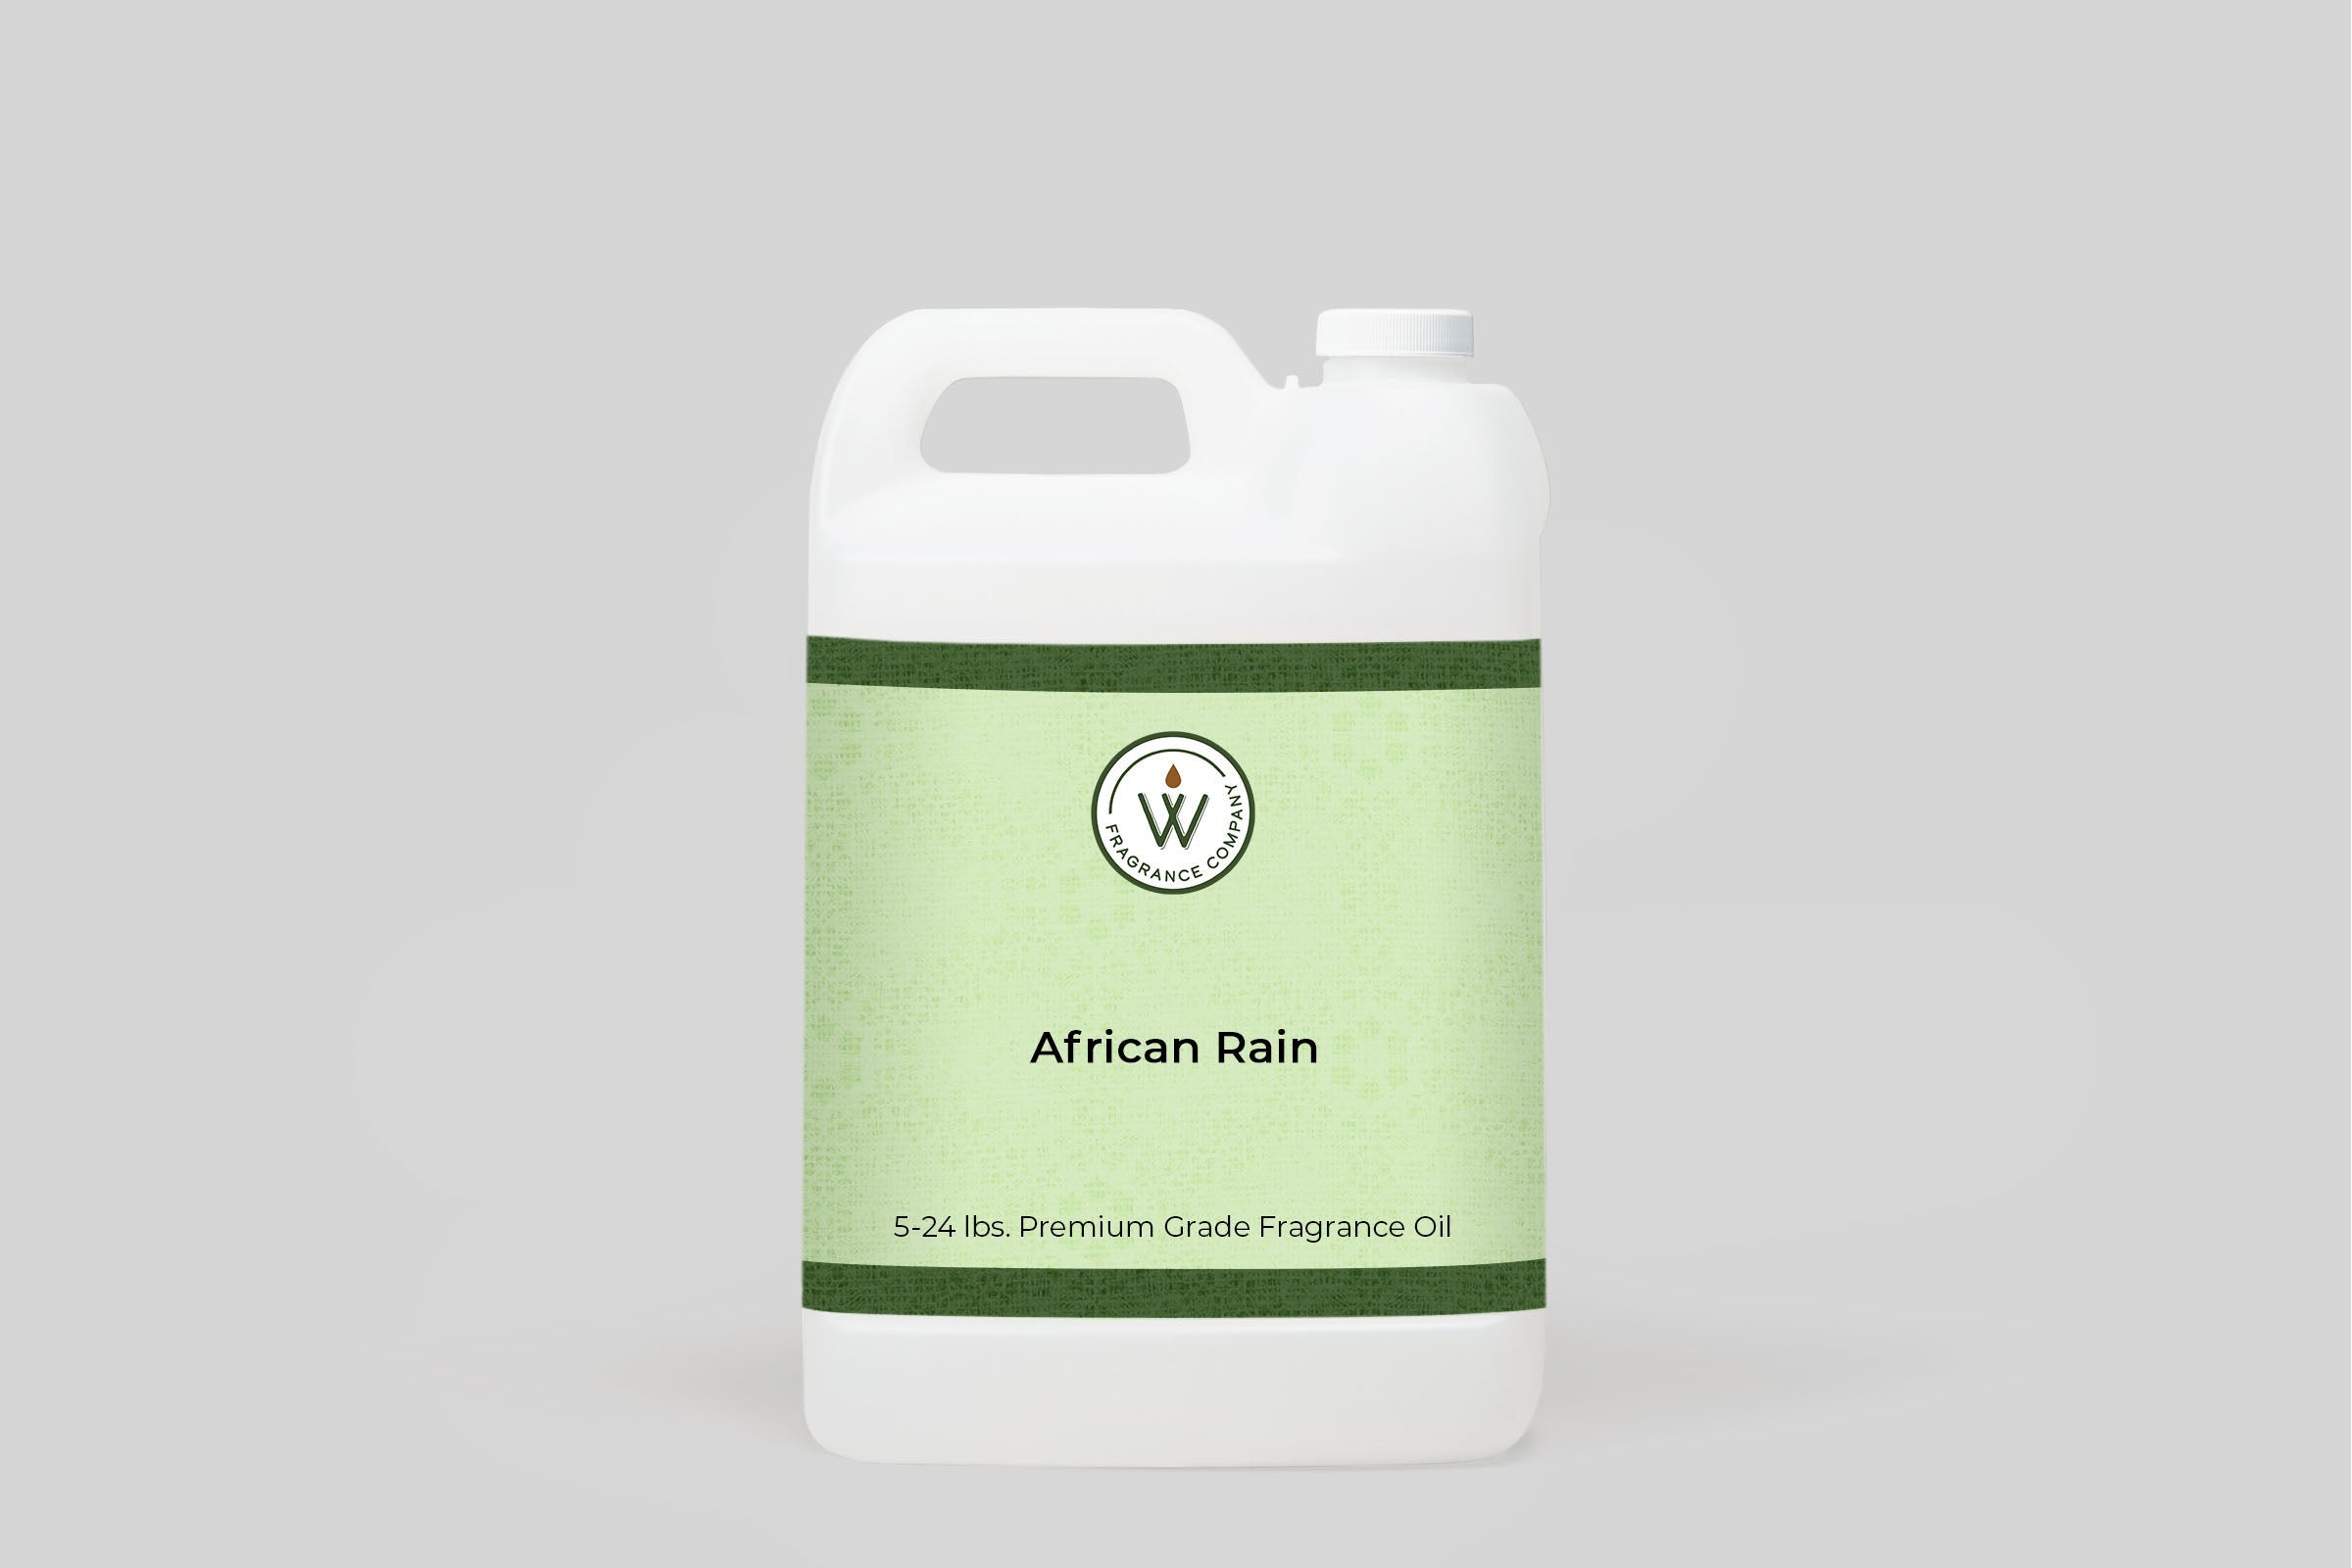 African Rain Fragrance Oil